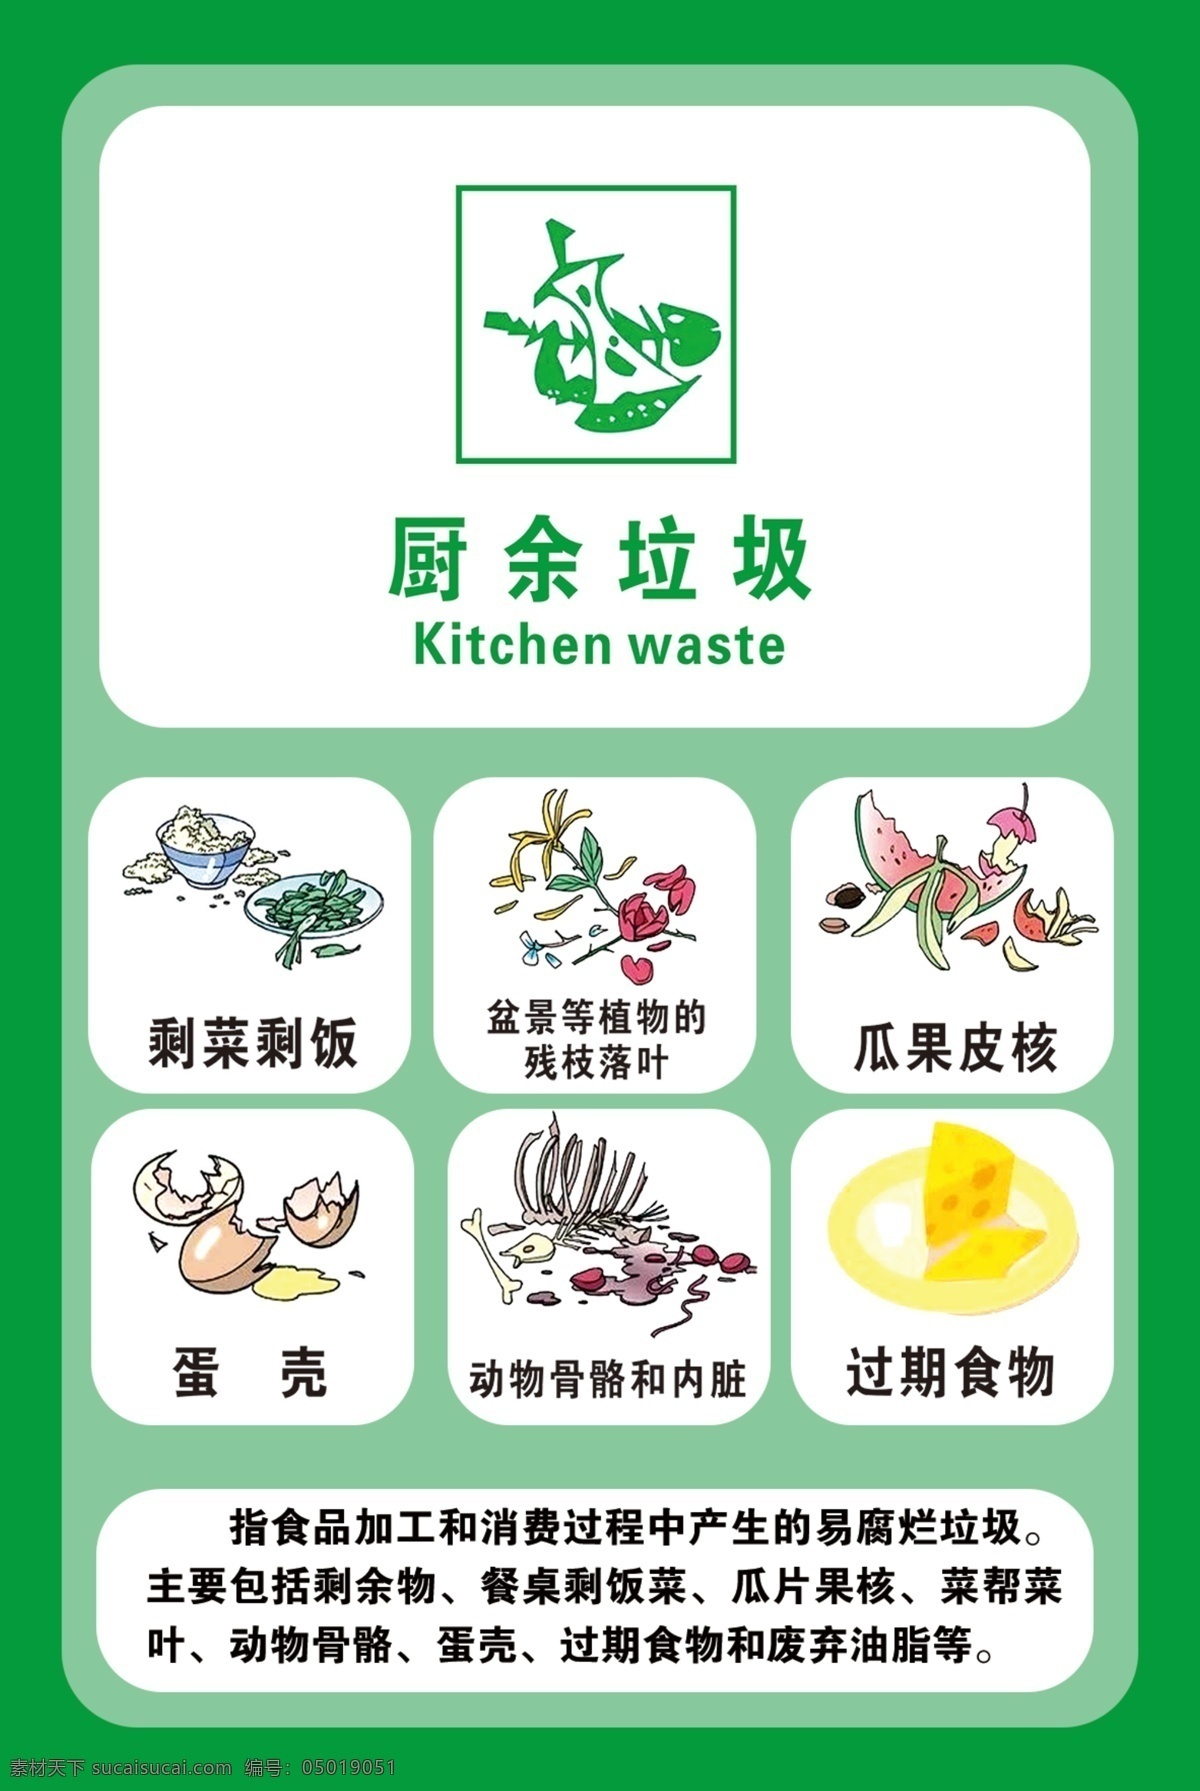 厨余垃圾 垃圾分类 垃圾分类图 有害垃圾 其他垃圾 可回收物 展板模板